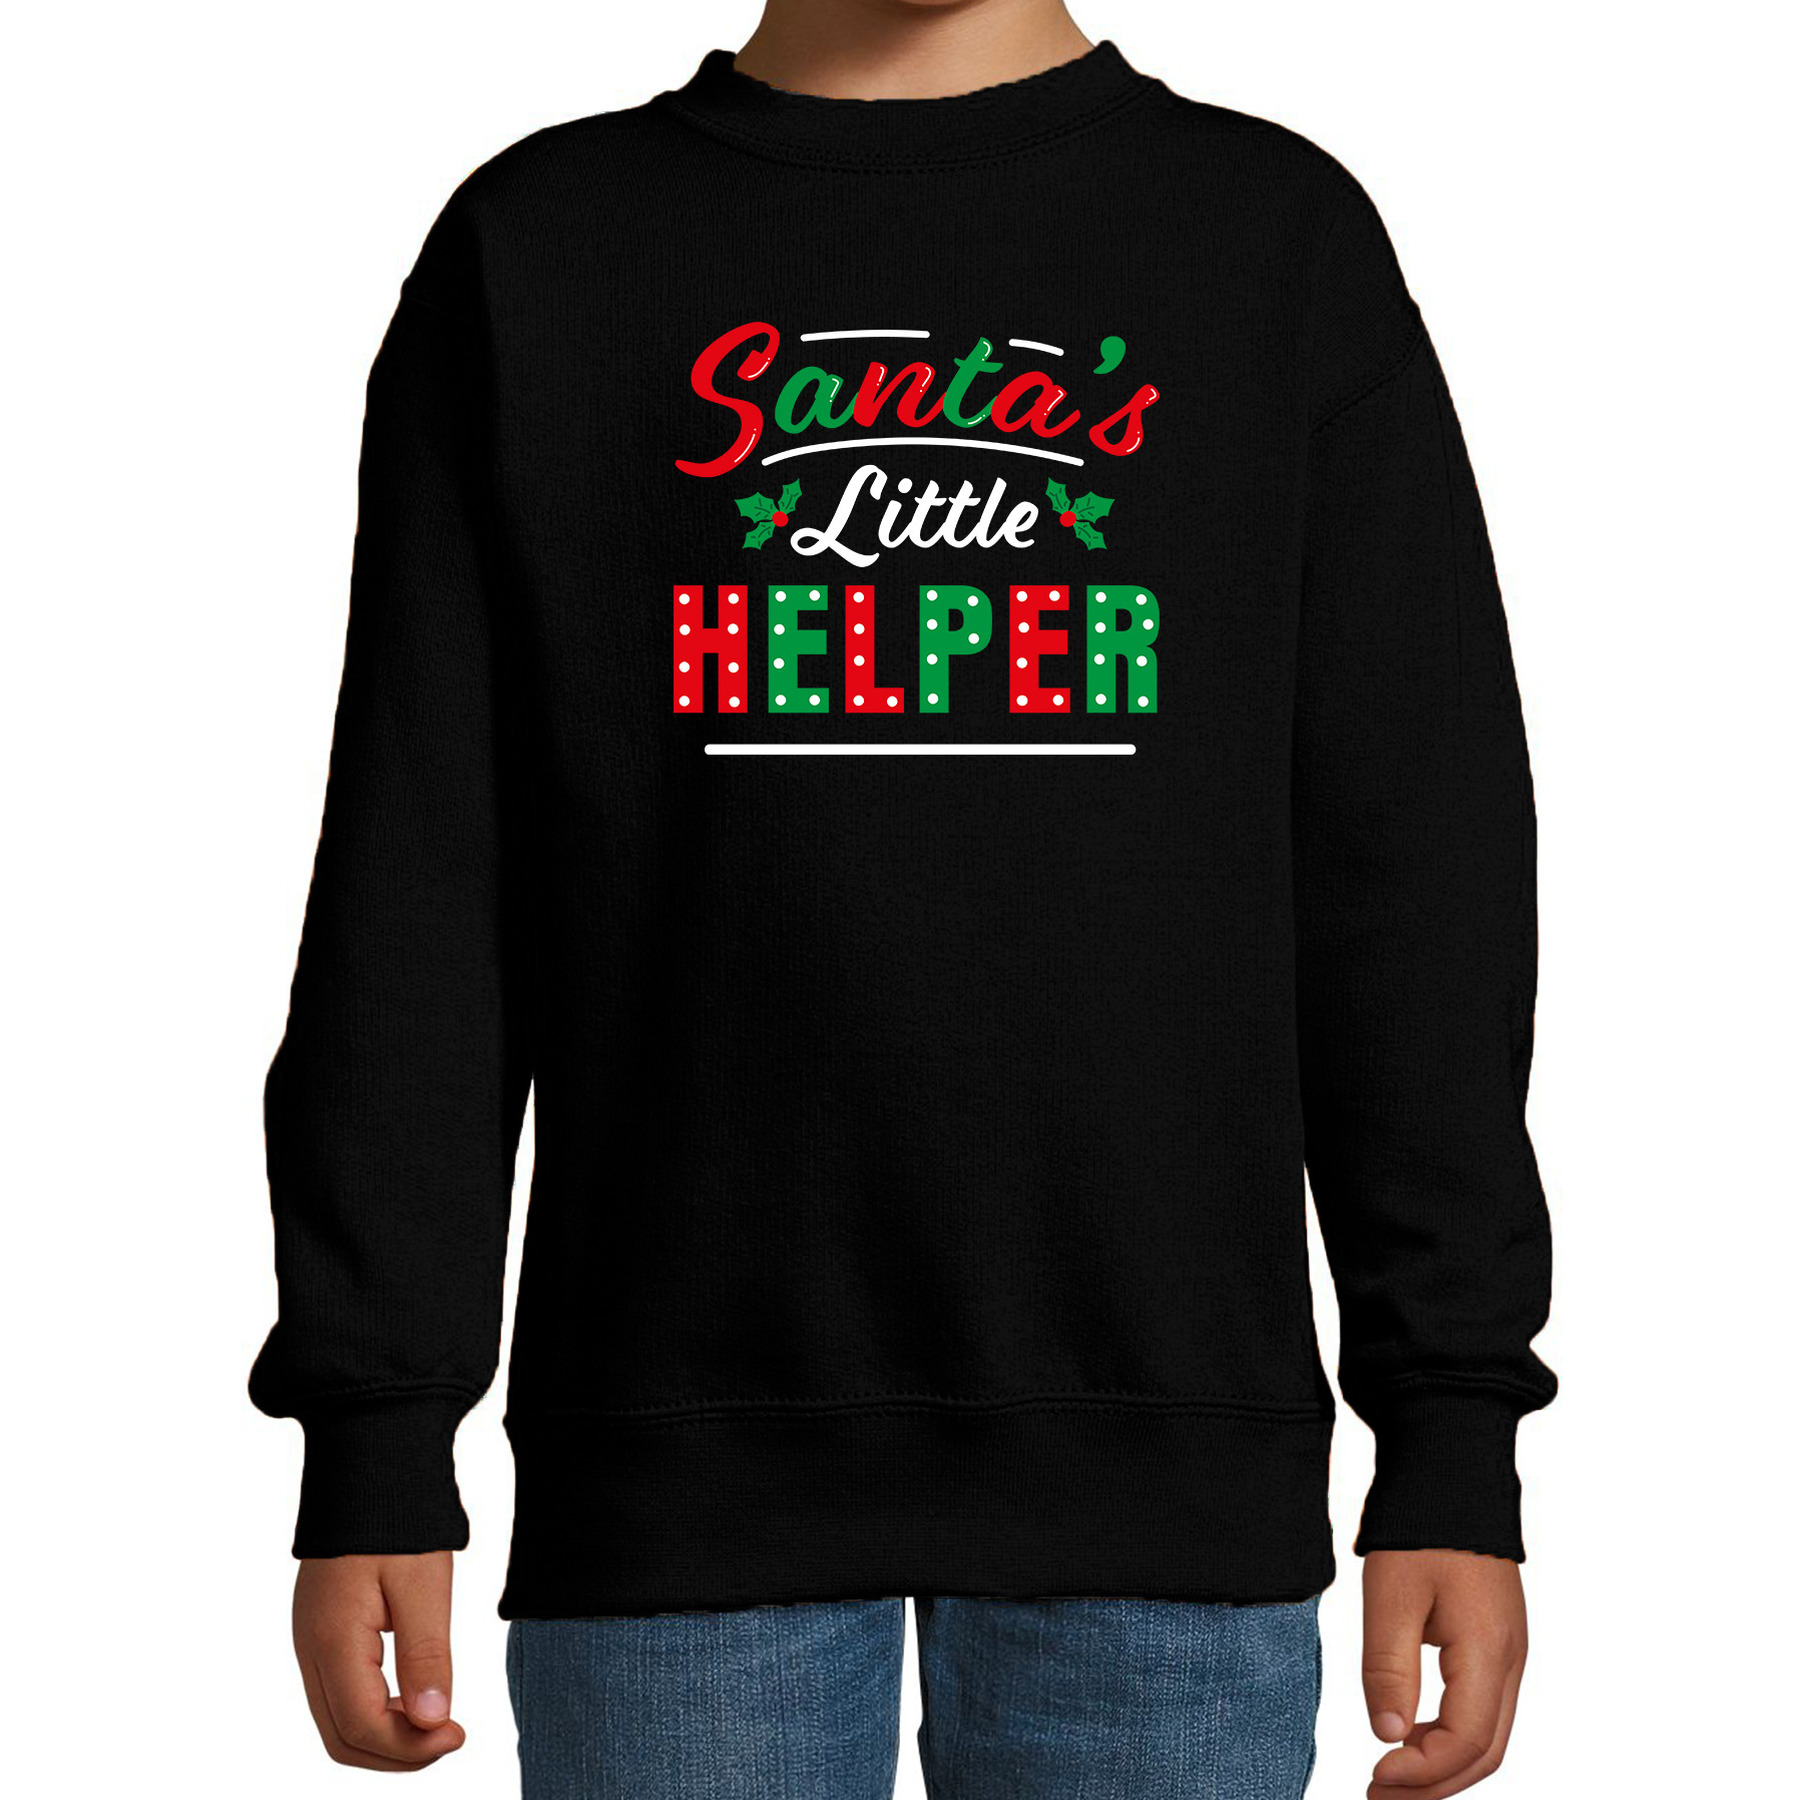 Santas little helper-Het hulpje van de Kerstman Kerstsweater-Kersttrui zwart voor kinderen